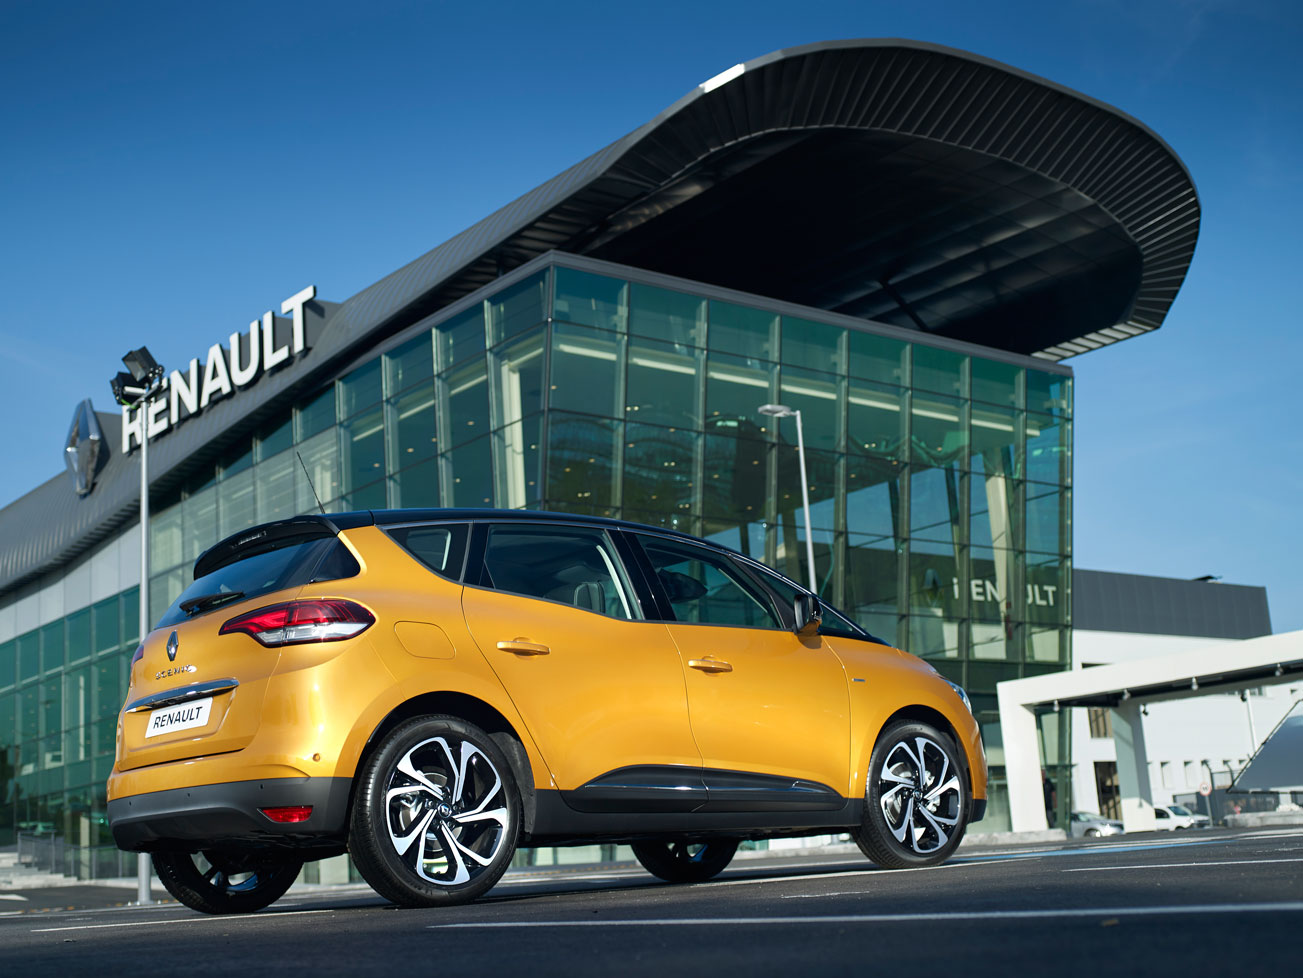 Las factorías de Renault cosechan buenos resultados de ventas (Foto: Renault)